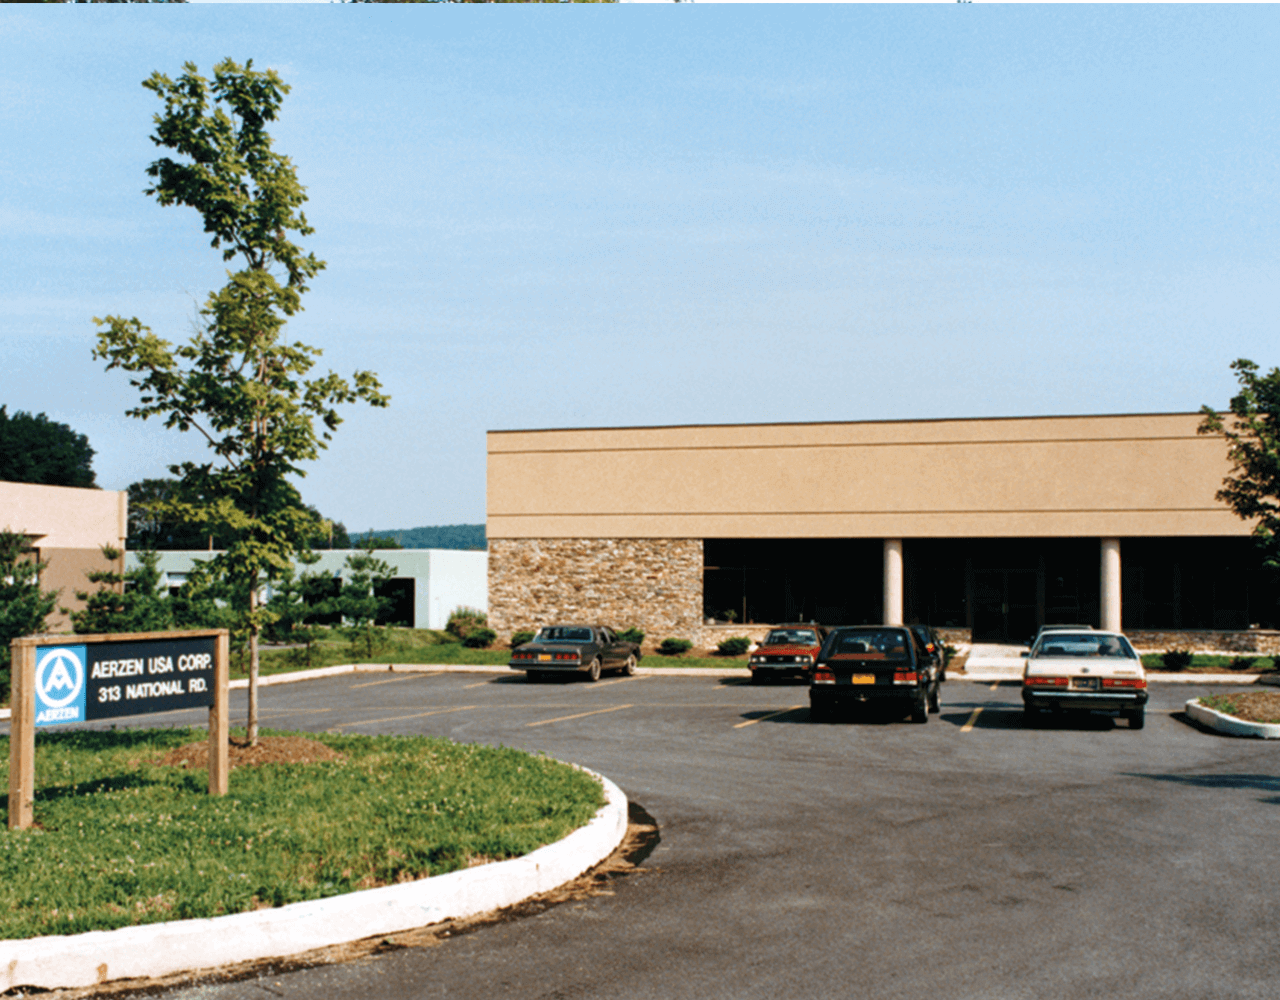 Kép: az AERZEN USA Corporation leányvállalat épülete